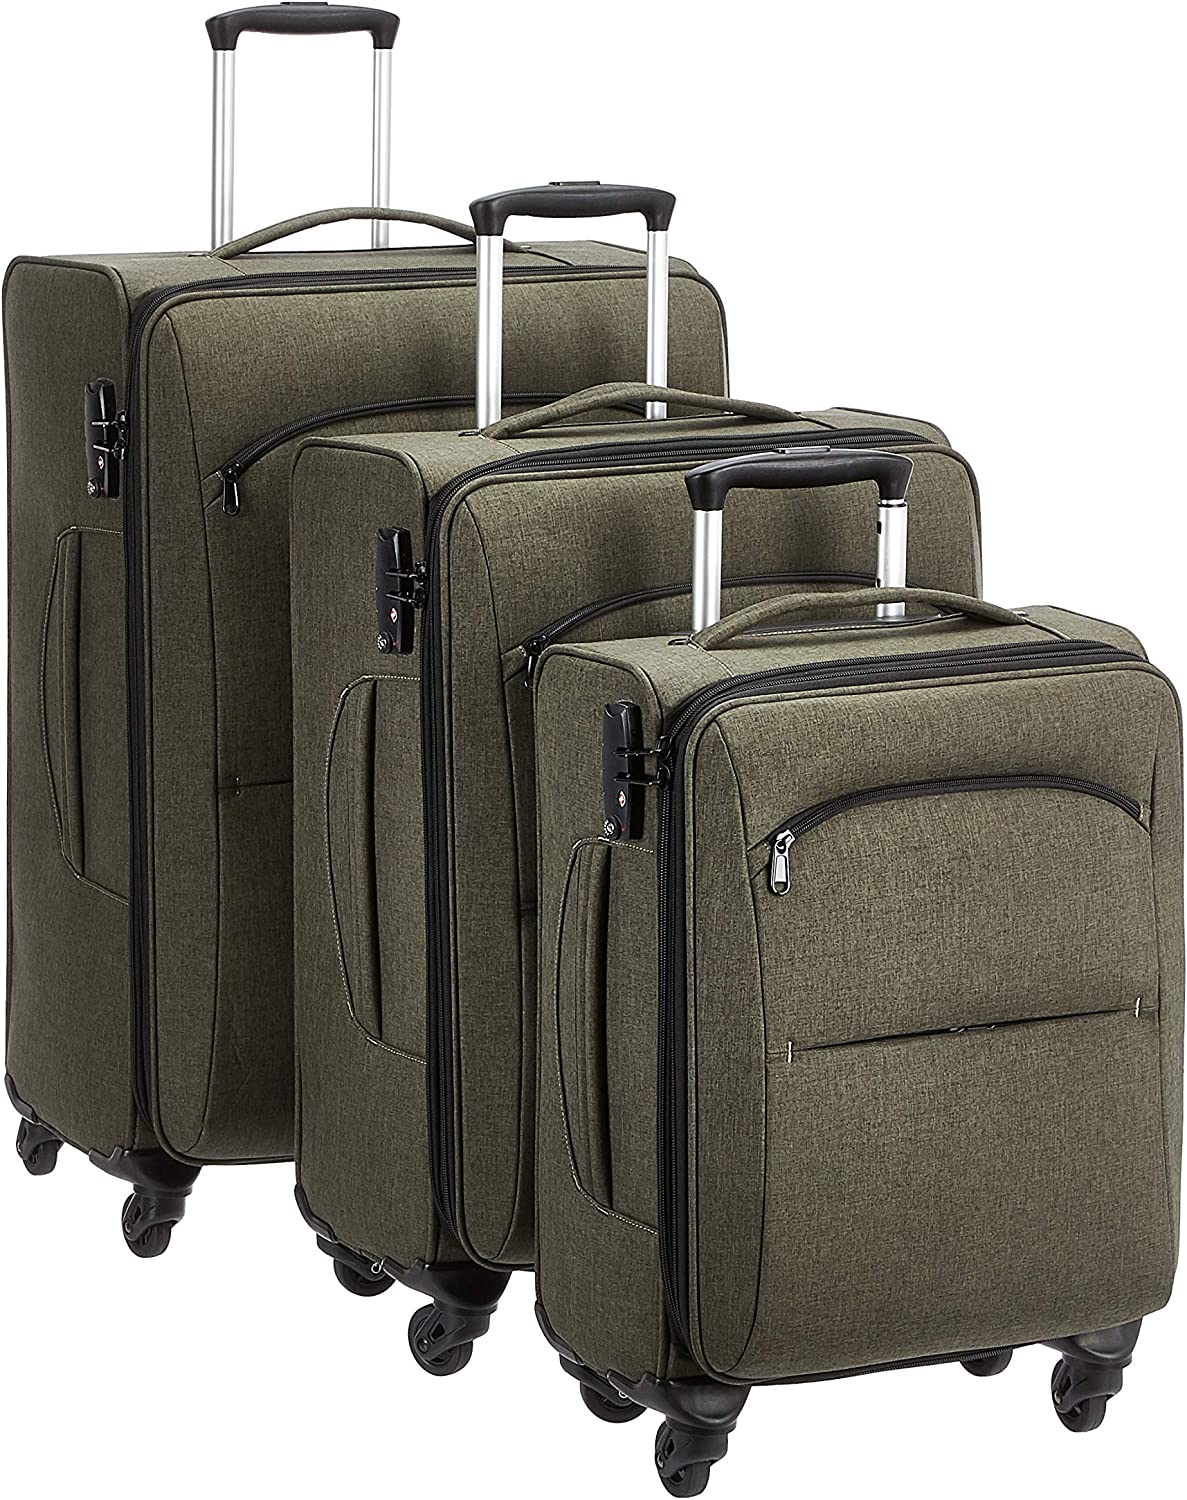 Amazon Basics Urban Softside Spinner Luggage, 3-Piece Set $139.99 Free Shipping w/ Prime